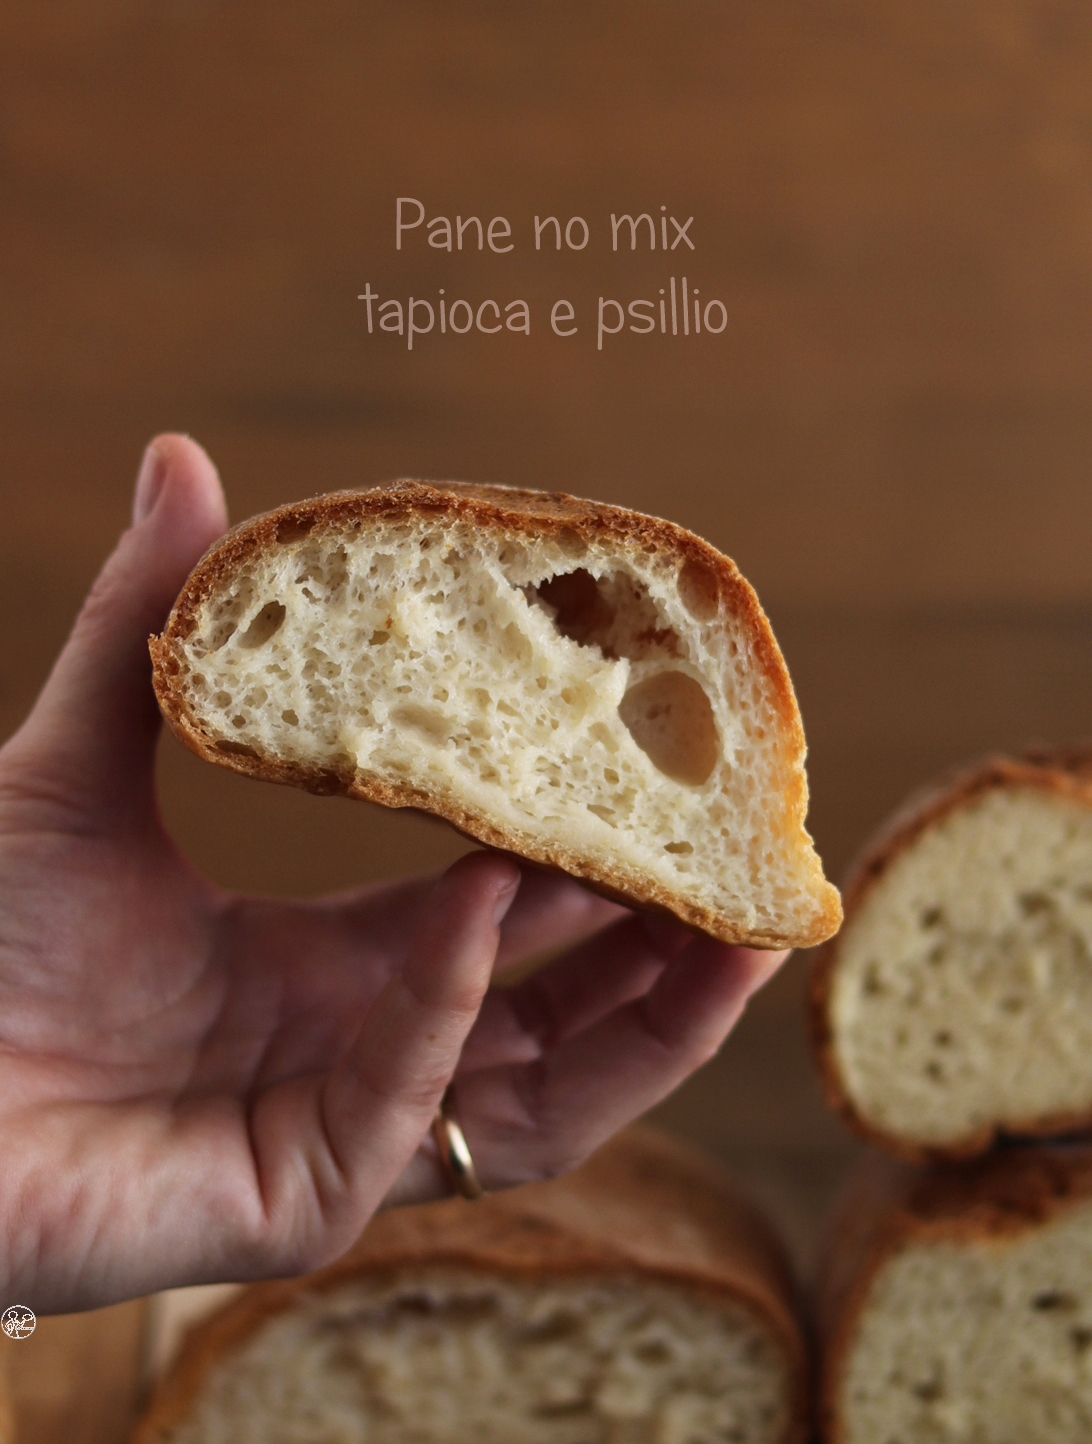 Filoni di pane senza glutine e senza mix commerciali - La Cassata Celiaca